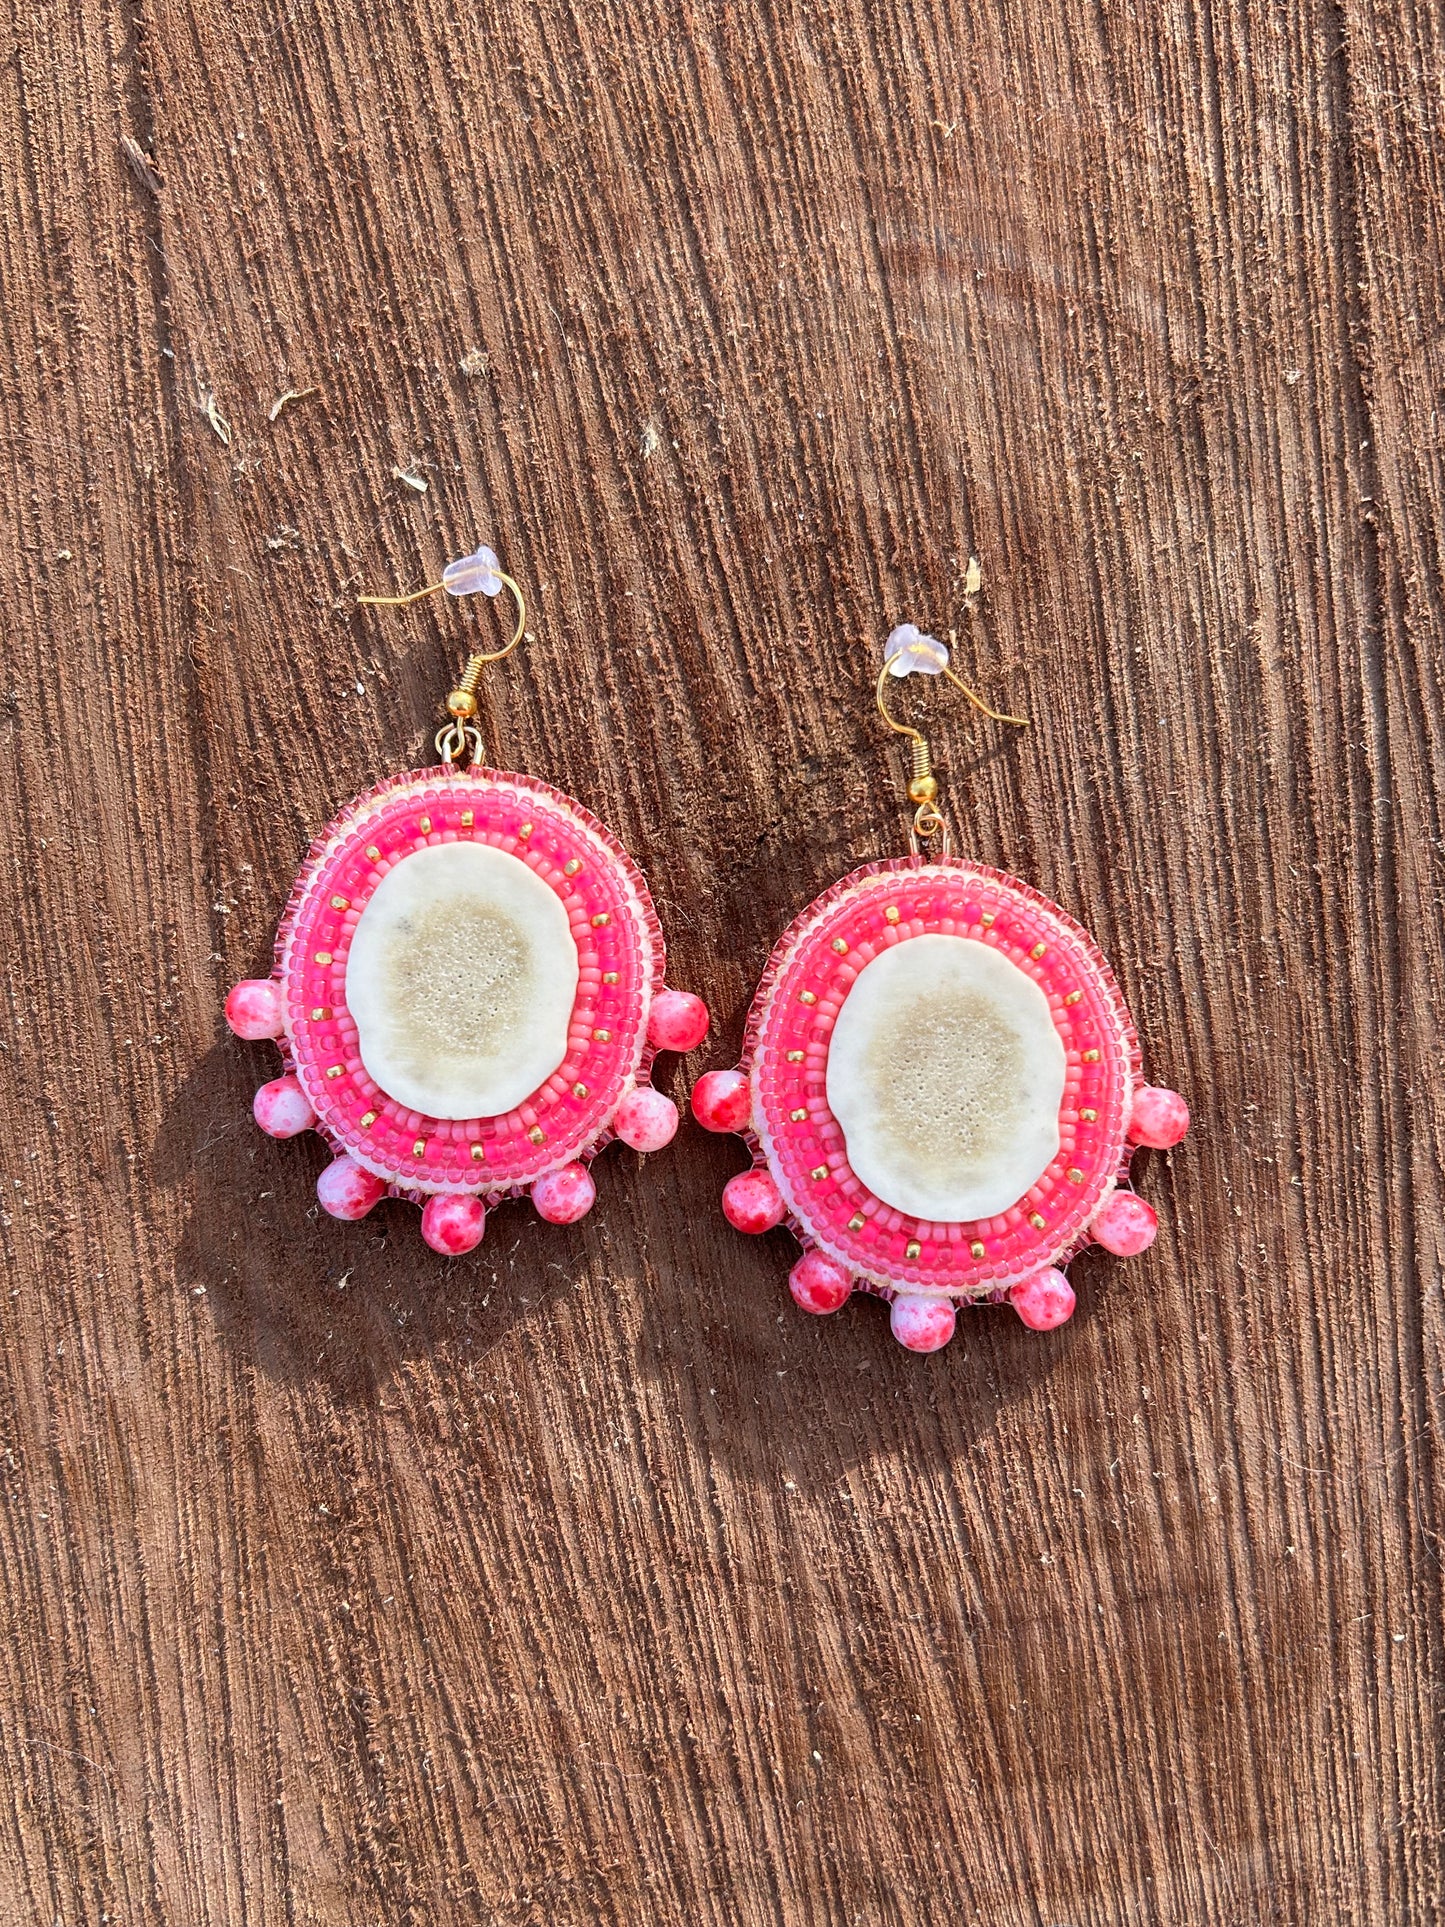 Hot pink antler earrings